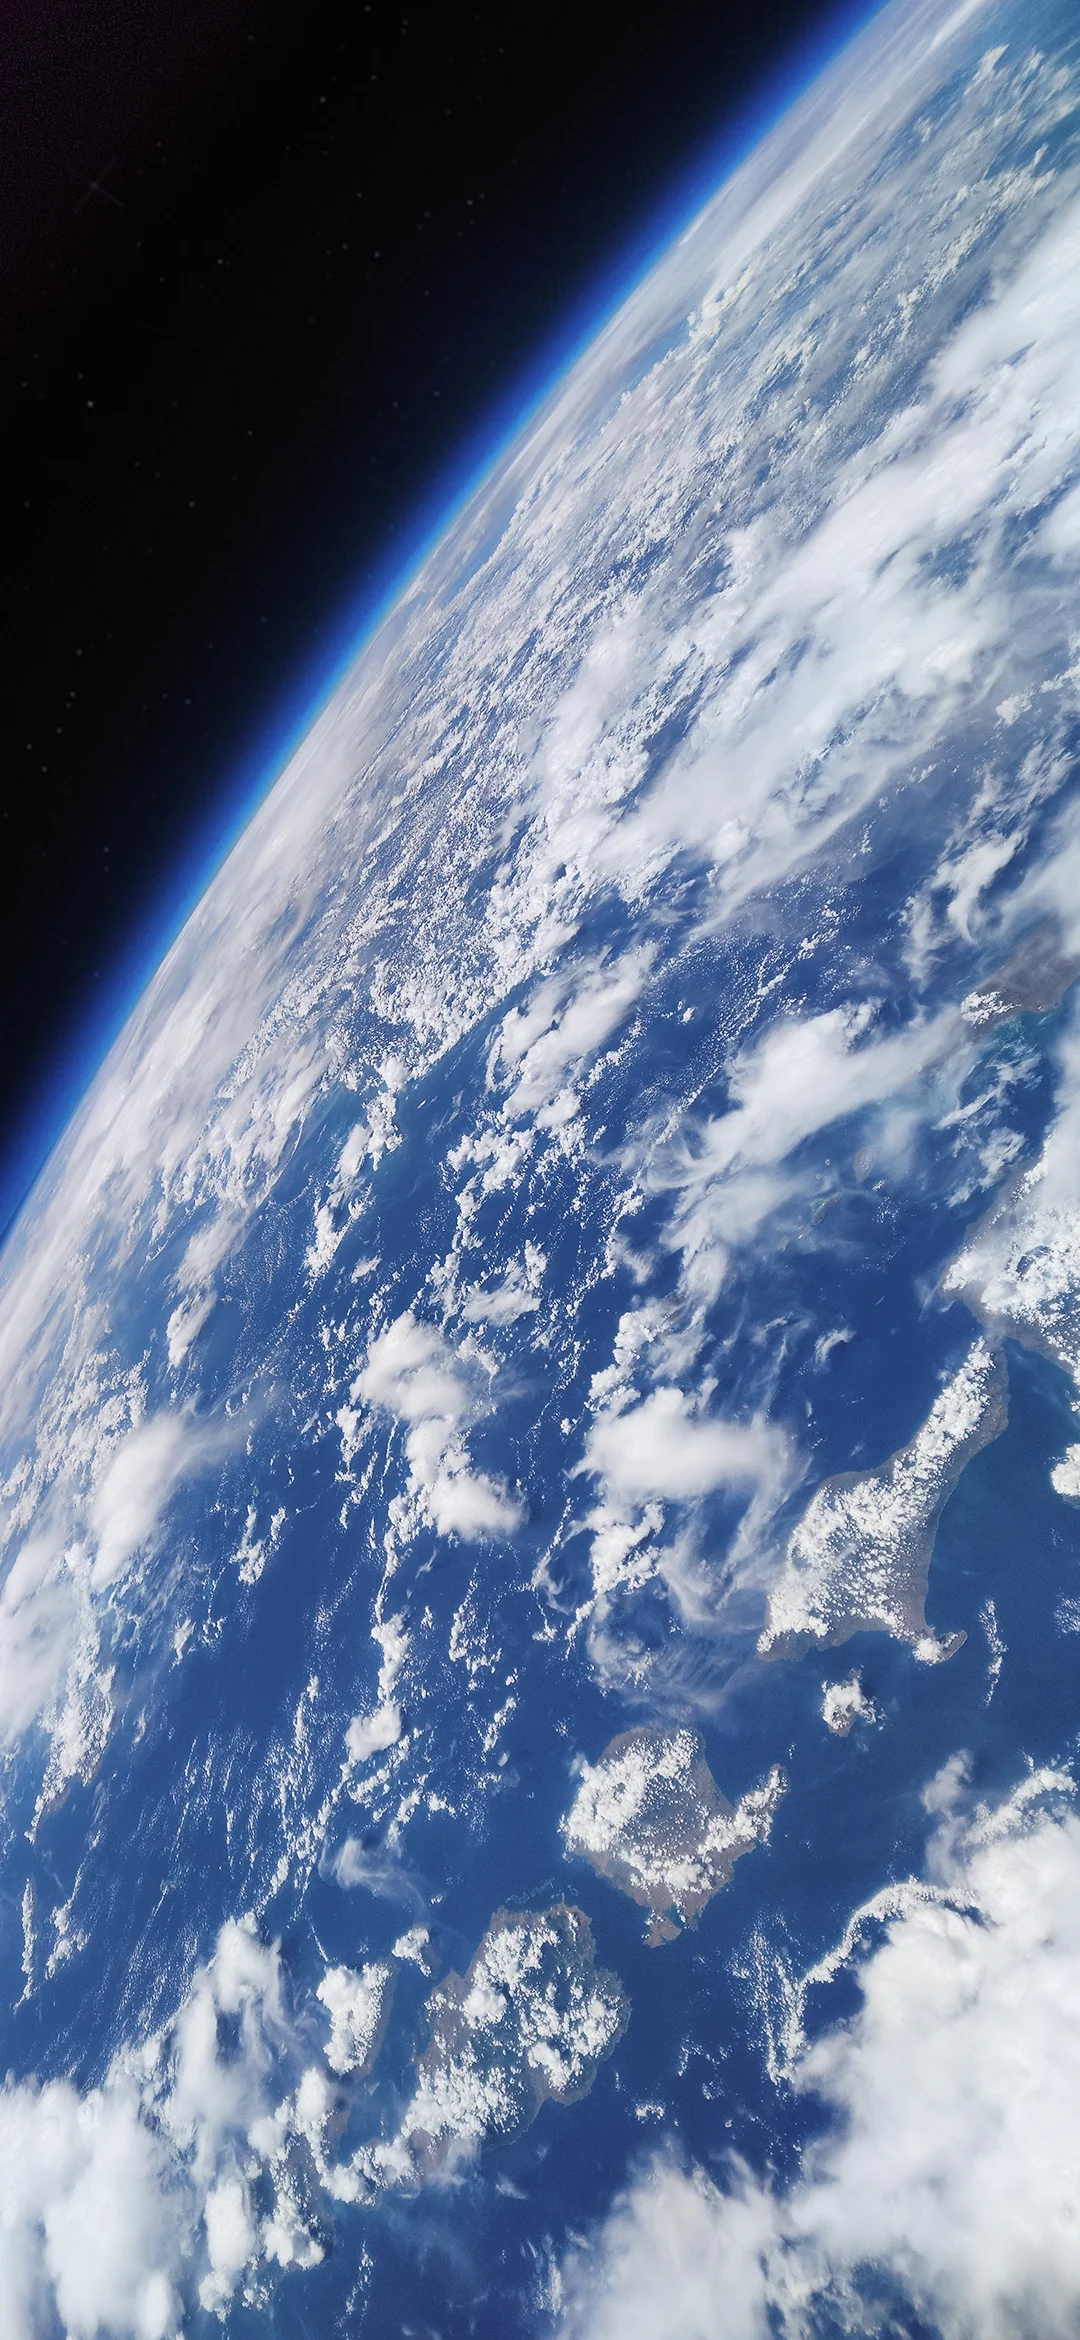 9 великолепных снимков Земли, сделанных на камеру Xiaomi Mi 10 Pro - фото 9